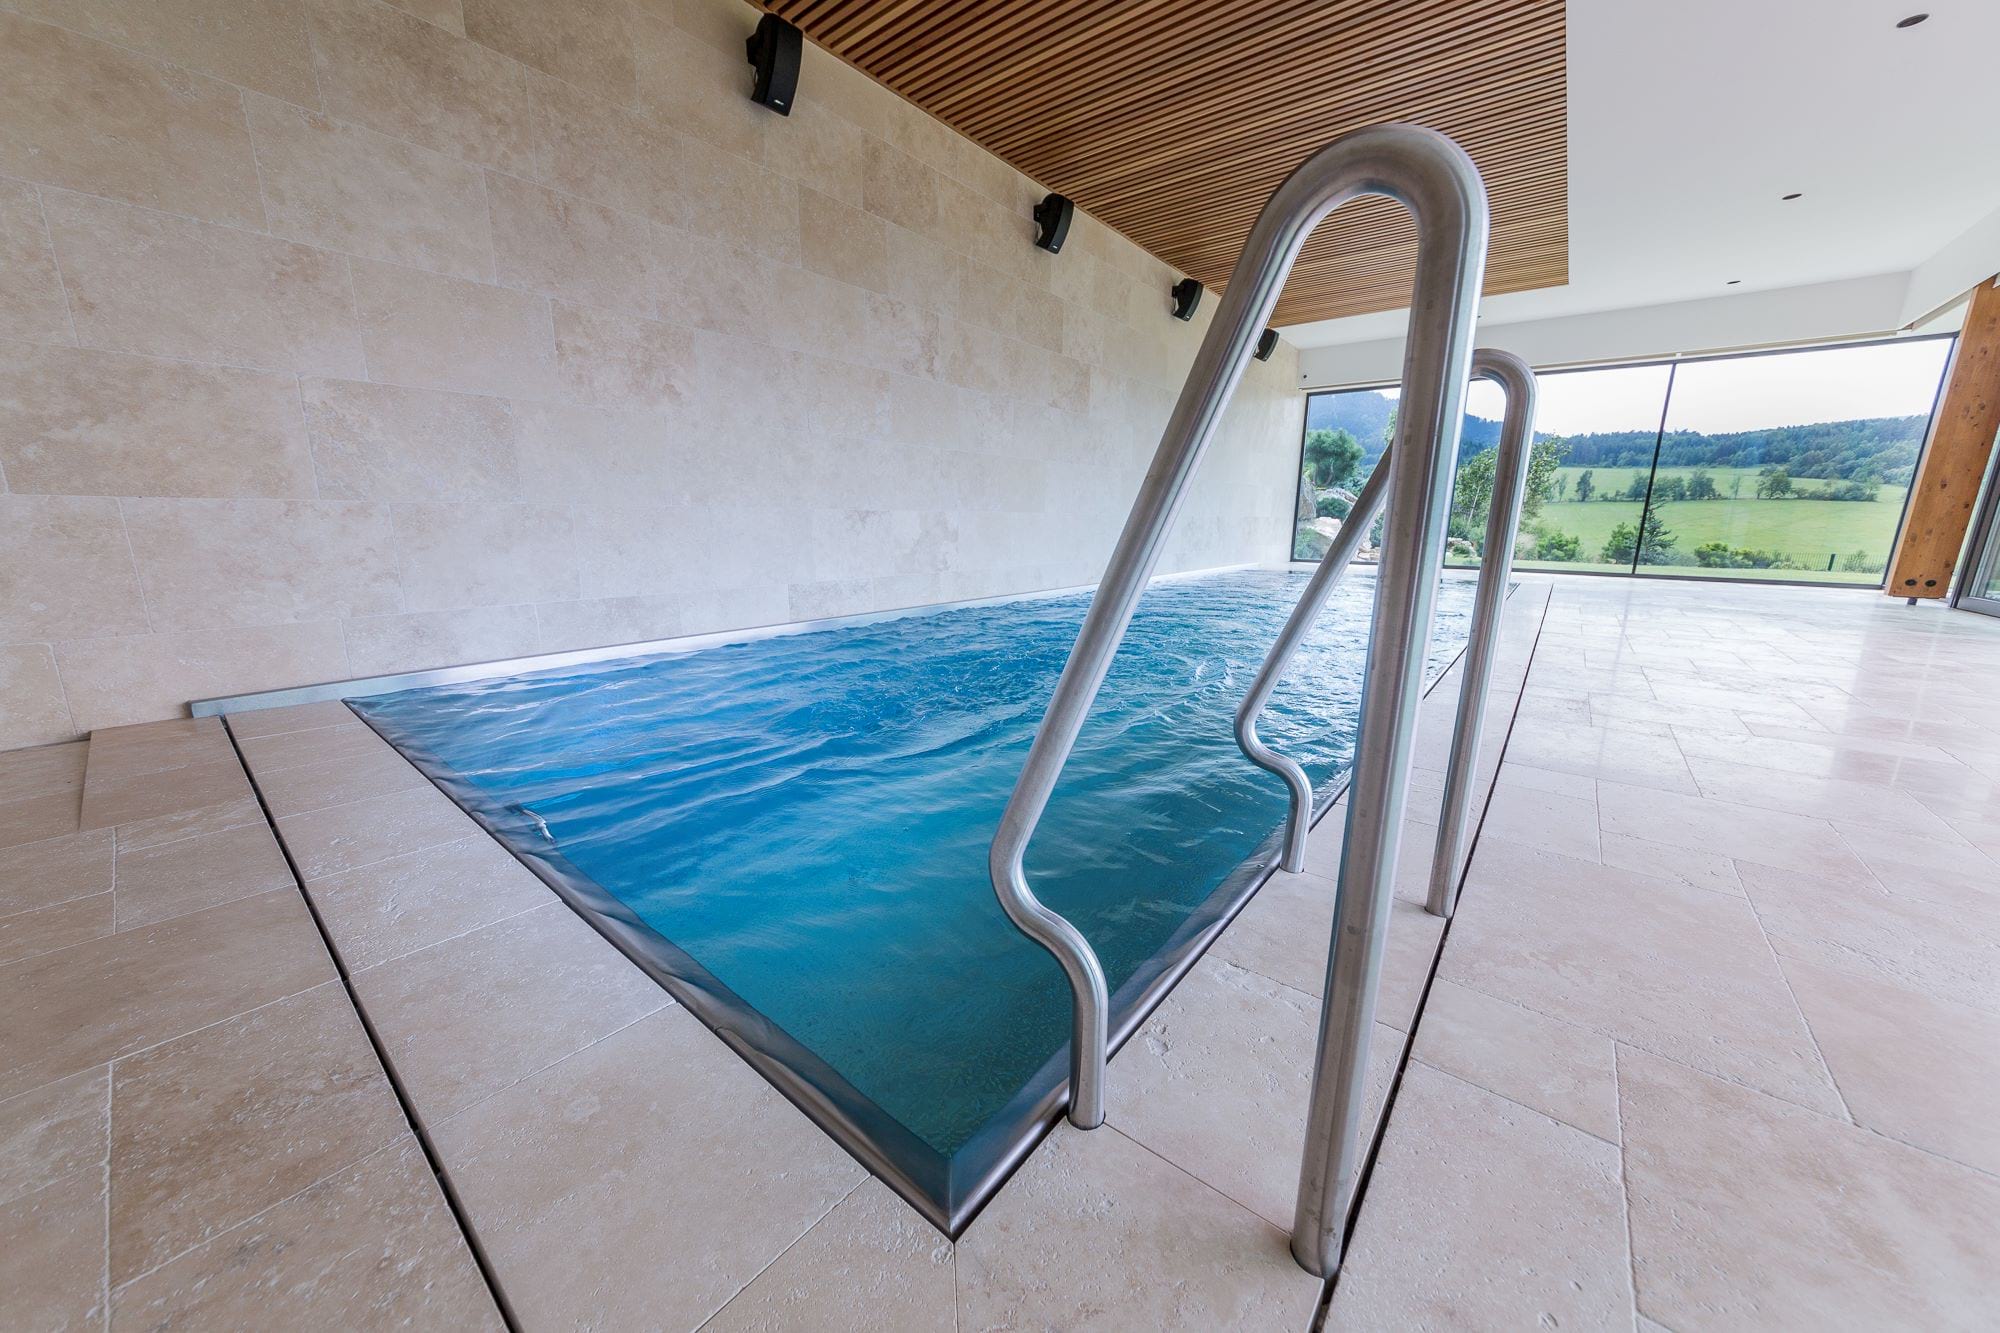 Nadštandardne vybavený bazén s protiprúdom a masážnou zónou | IMAGINOX